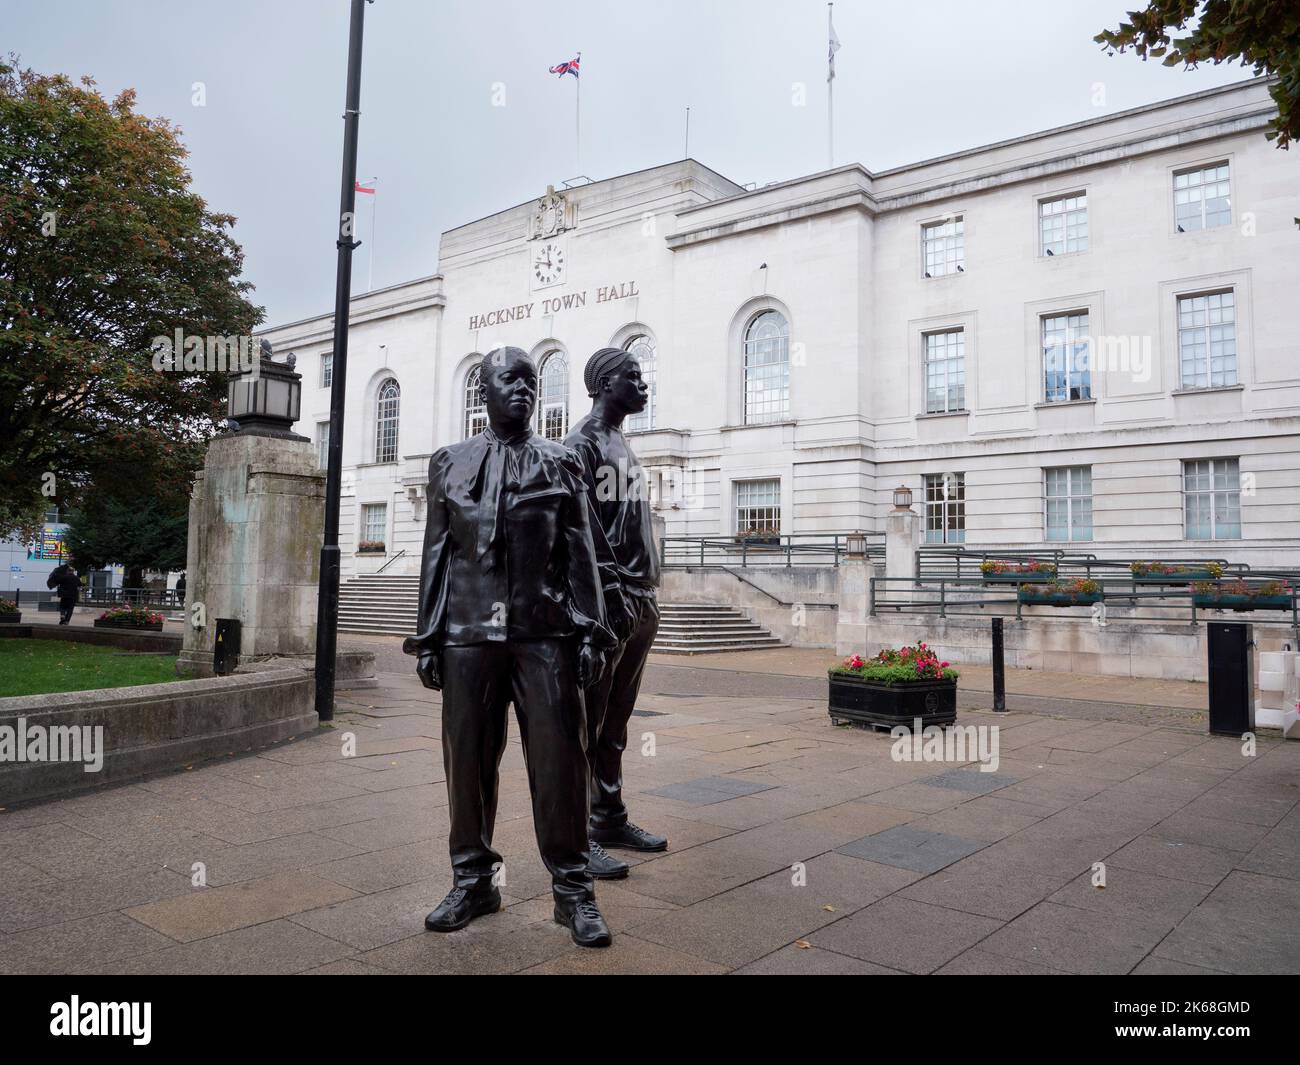 La mairie de Hackney, Hackney, Londres, Royaume-Uni, avec la sculpture Warm Shores de Thomas J Price, en hommage à la génération Windrush, a été dévoilée en juin 2022 Banque D'Images